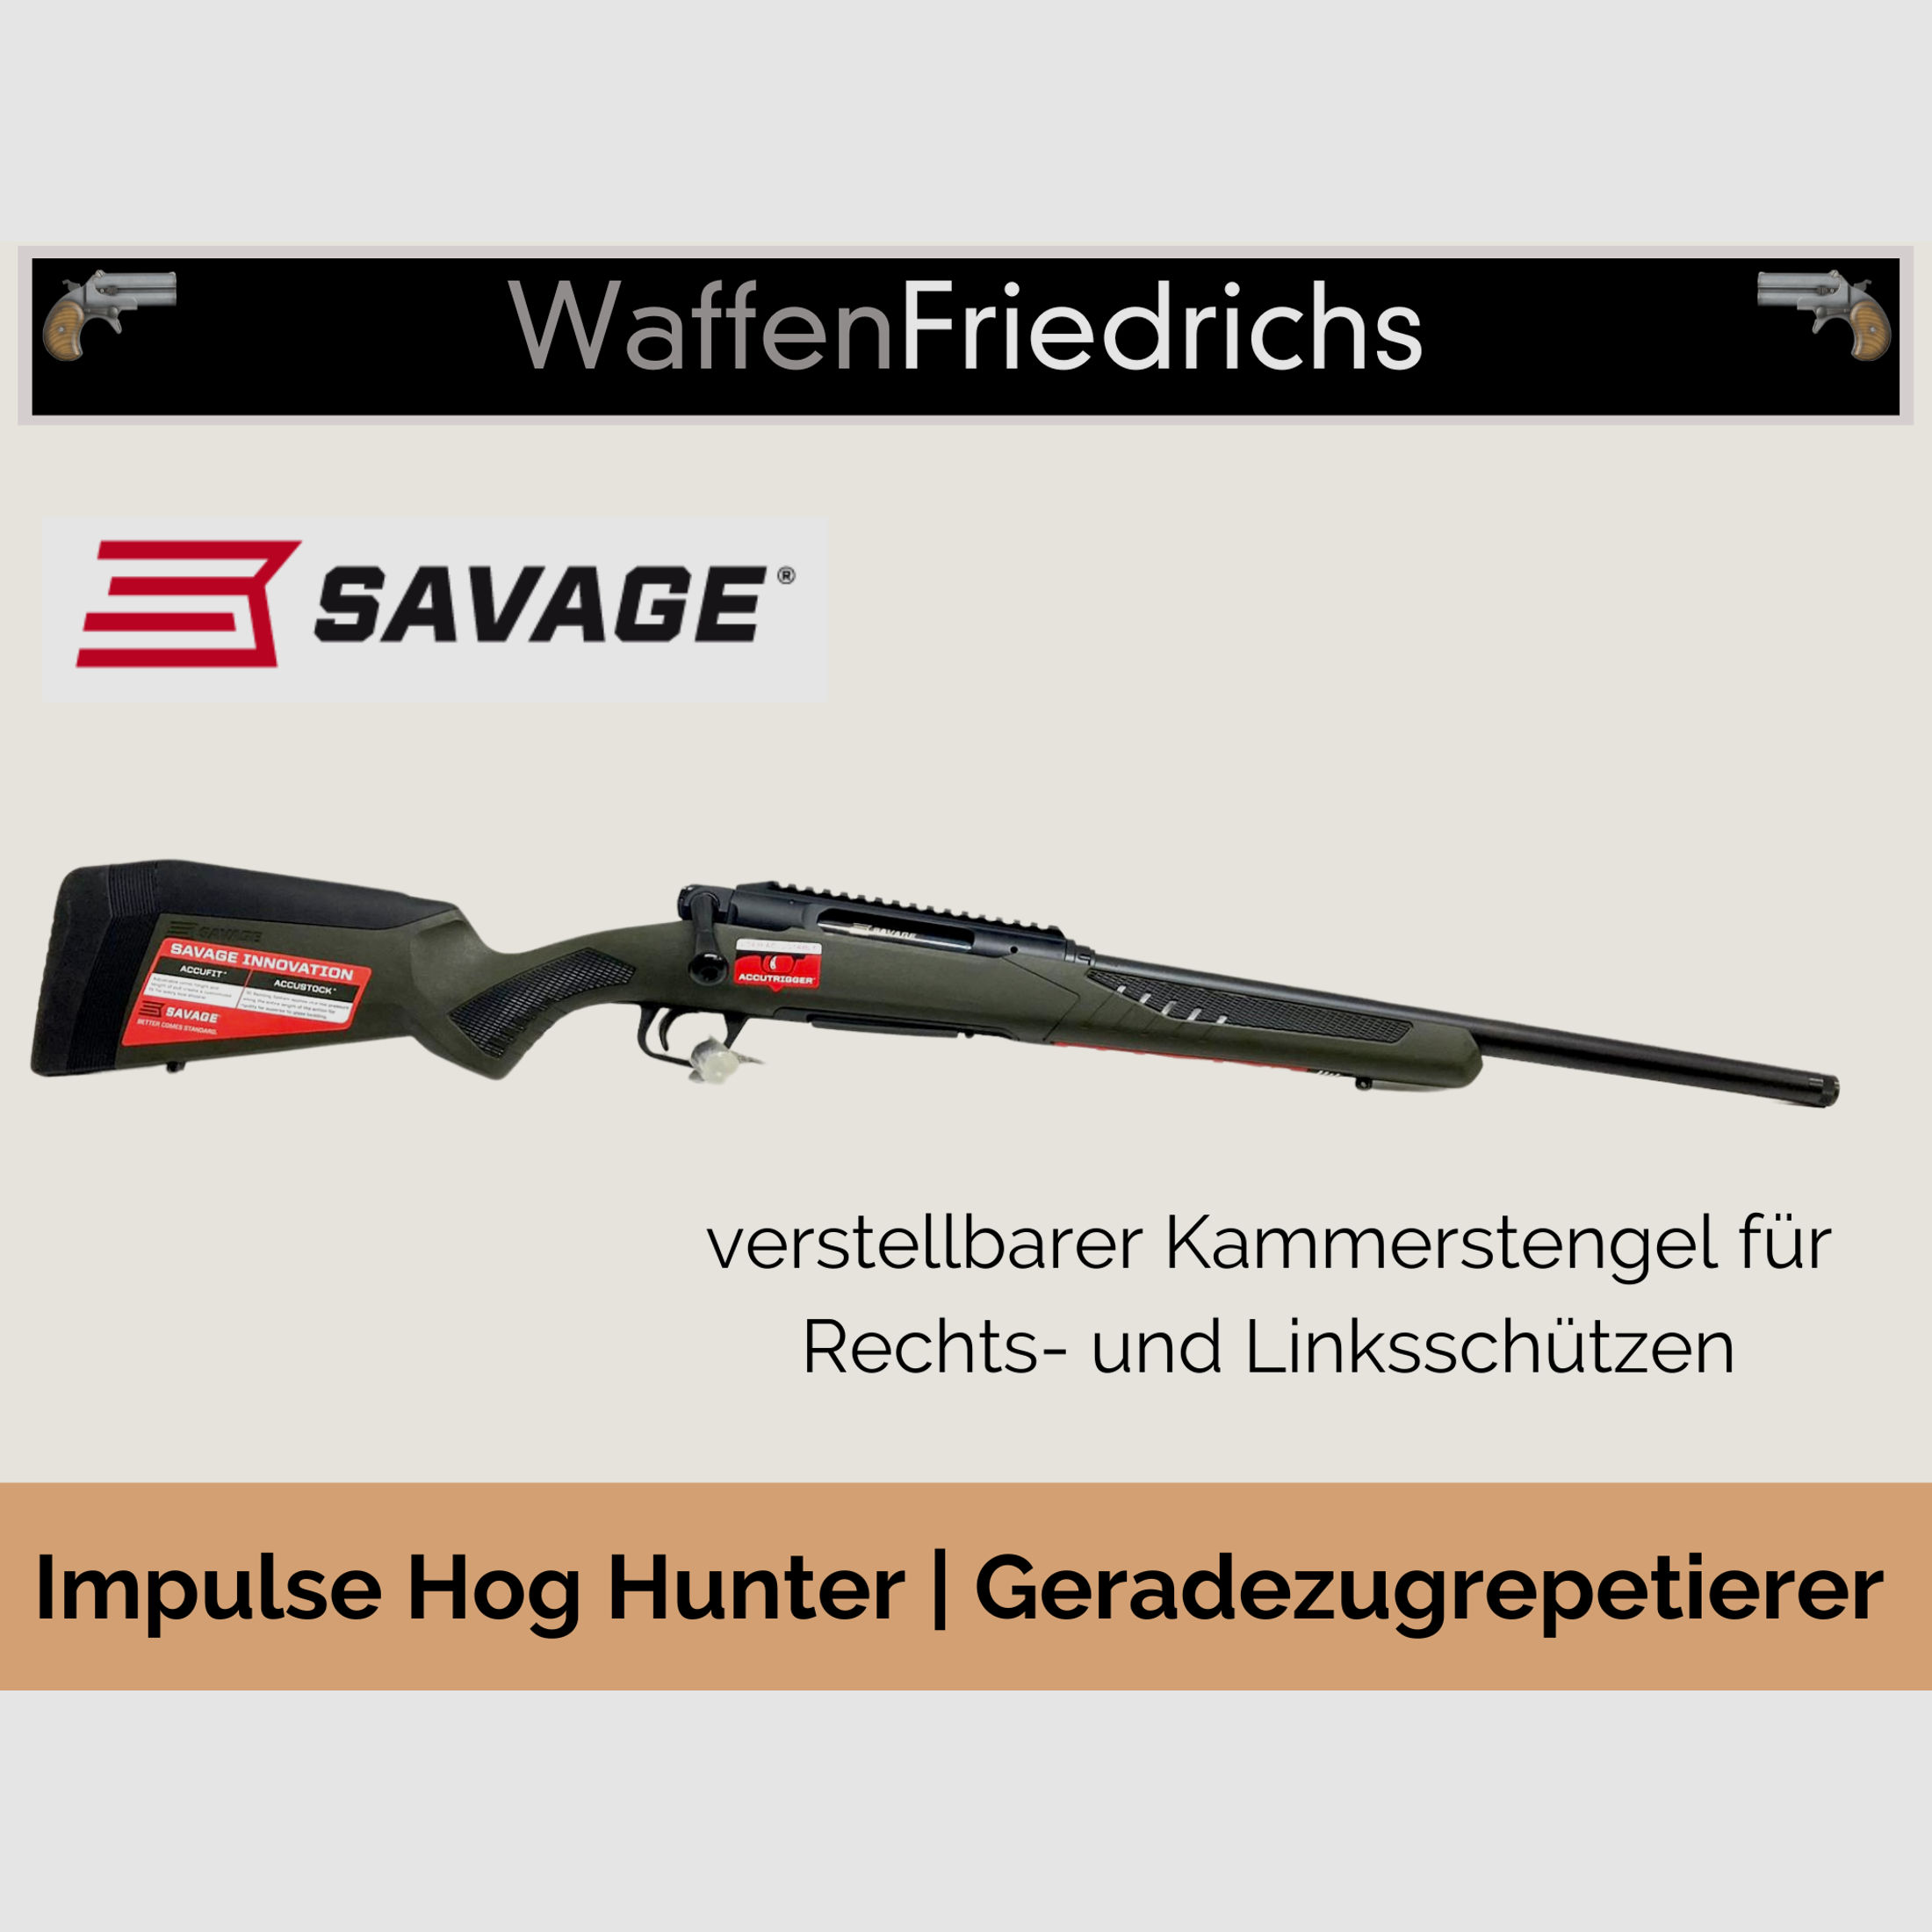 SAVAGE IMPULSE | Hog Hunter | für Links- und Rechtsschützen - WaffenFriedrichs